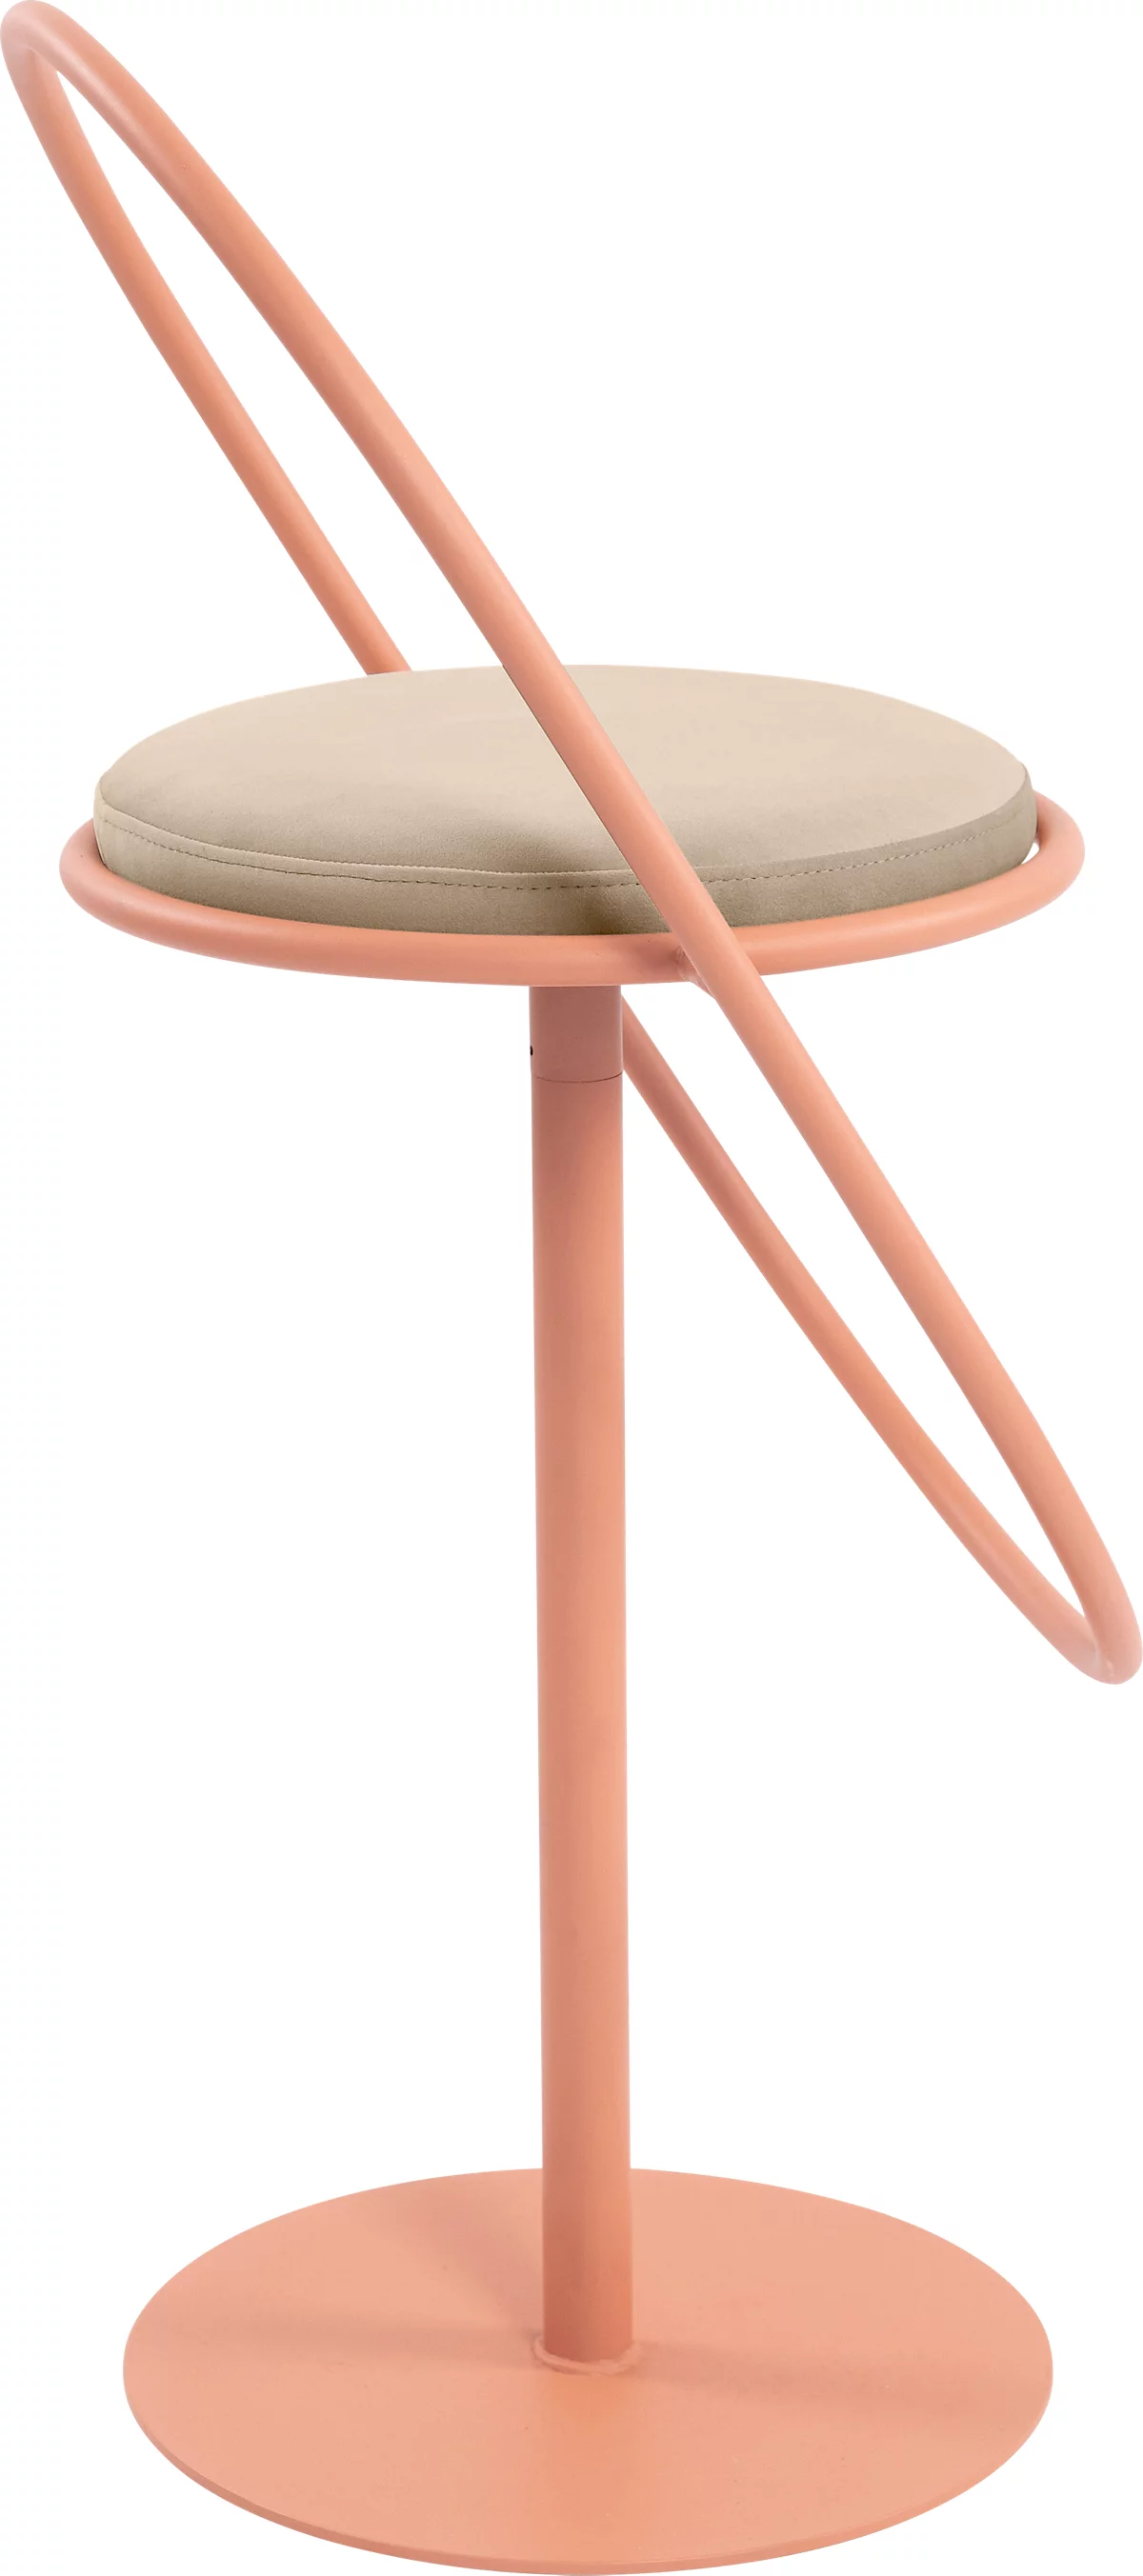 Barhocker Paperflow Saturne, mit Rückenlehne, Sitzhöhe 765 mm, gepolstert, zu 100 % recycelbar, Samtbezug elfenbeinfarben, Gestell rosa